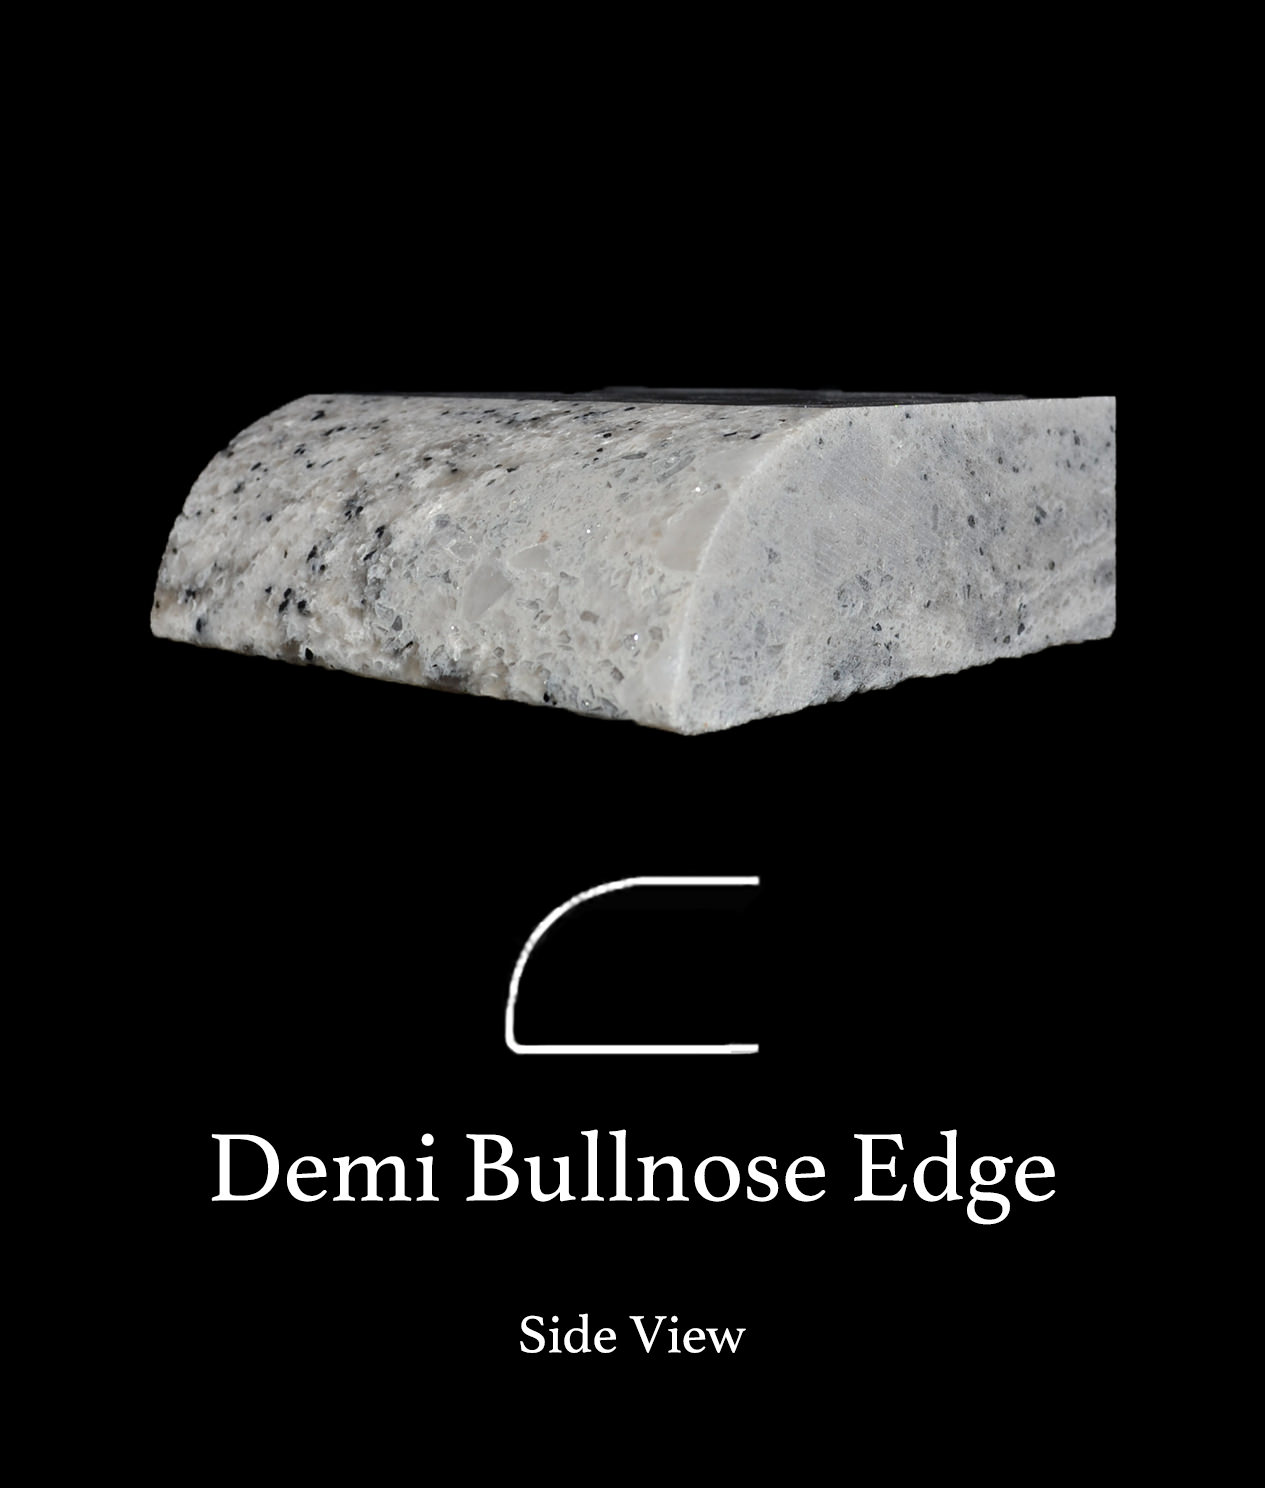 Demi Bullnose Edge Countertops Cost Reviews